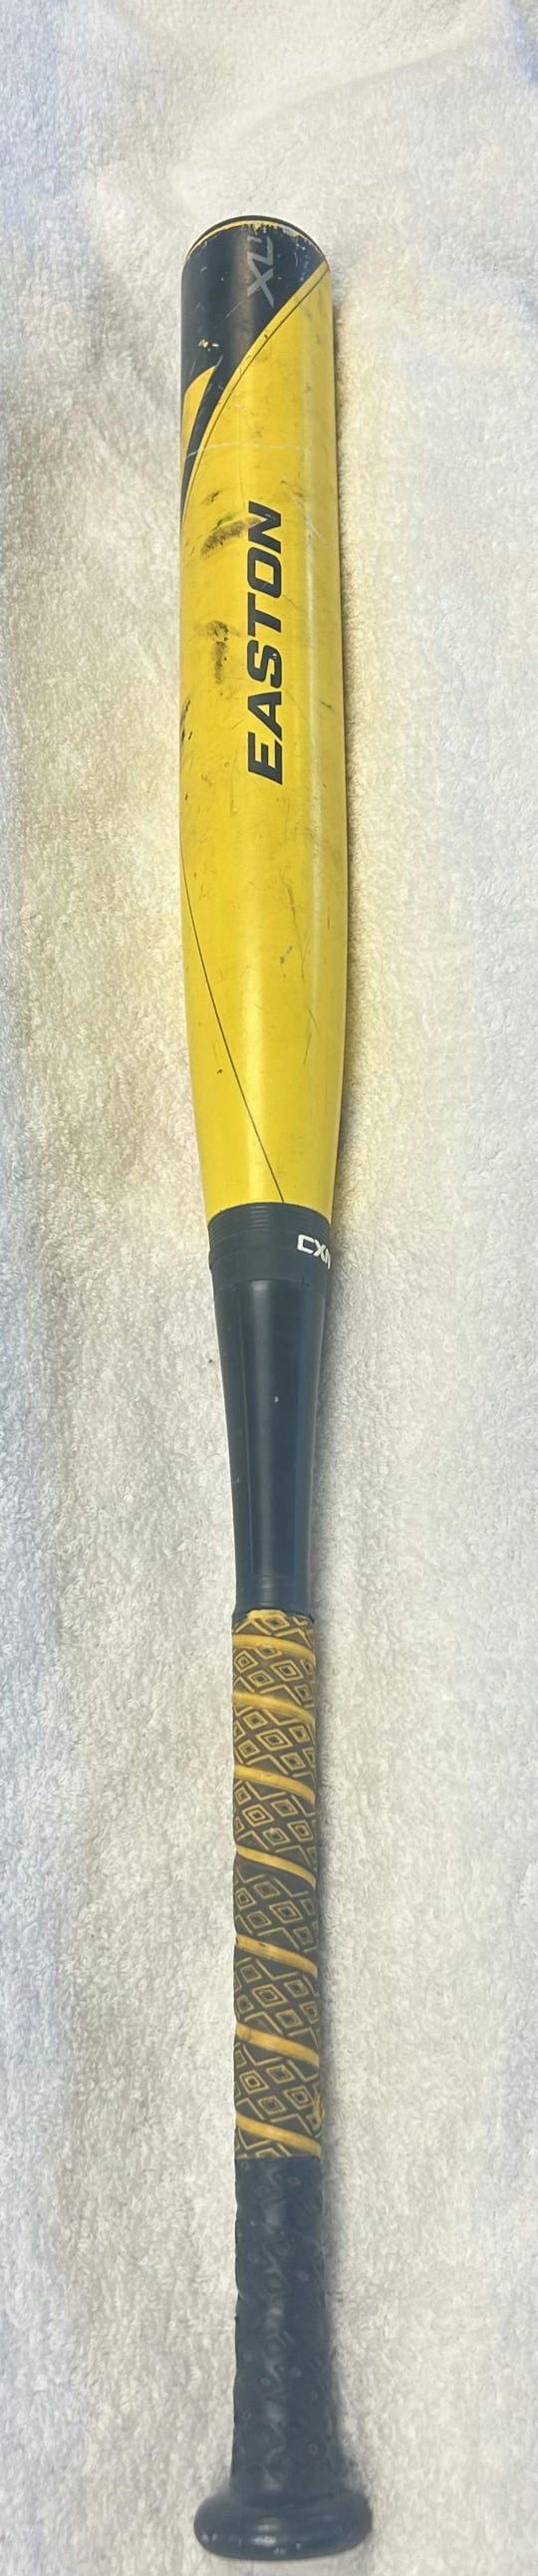 Used Easton Xl1 Yb14x1 30" -10 Drop Fastpitch Bats